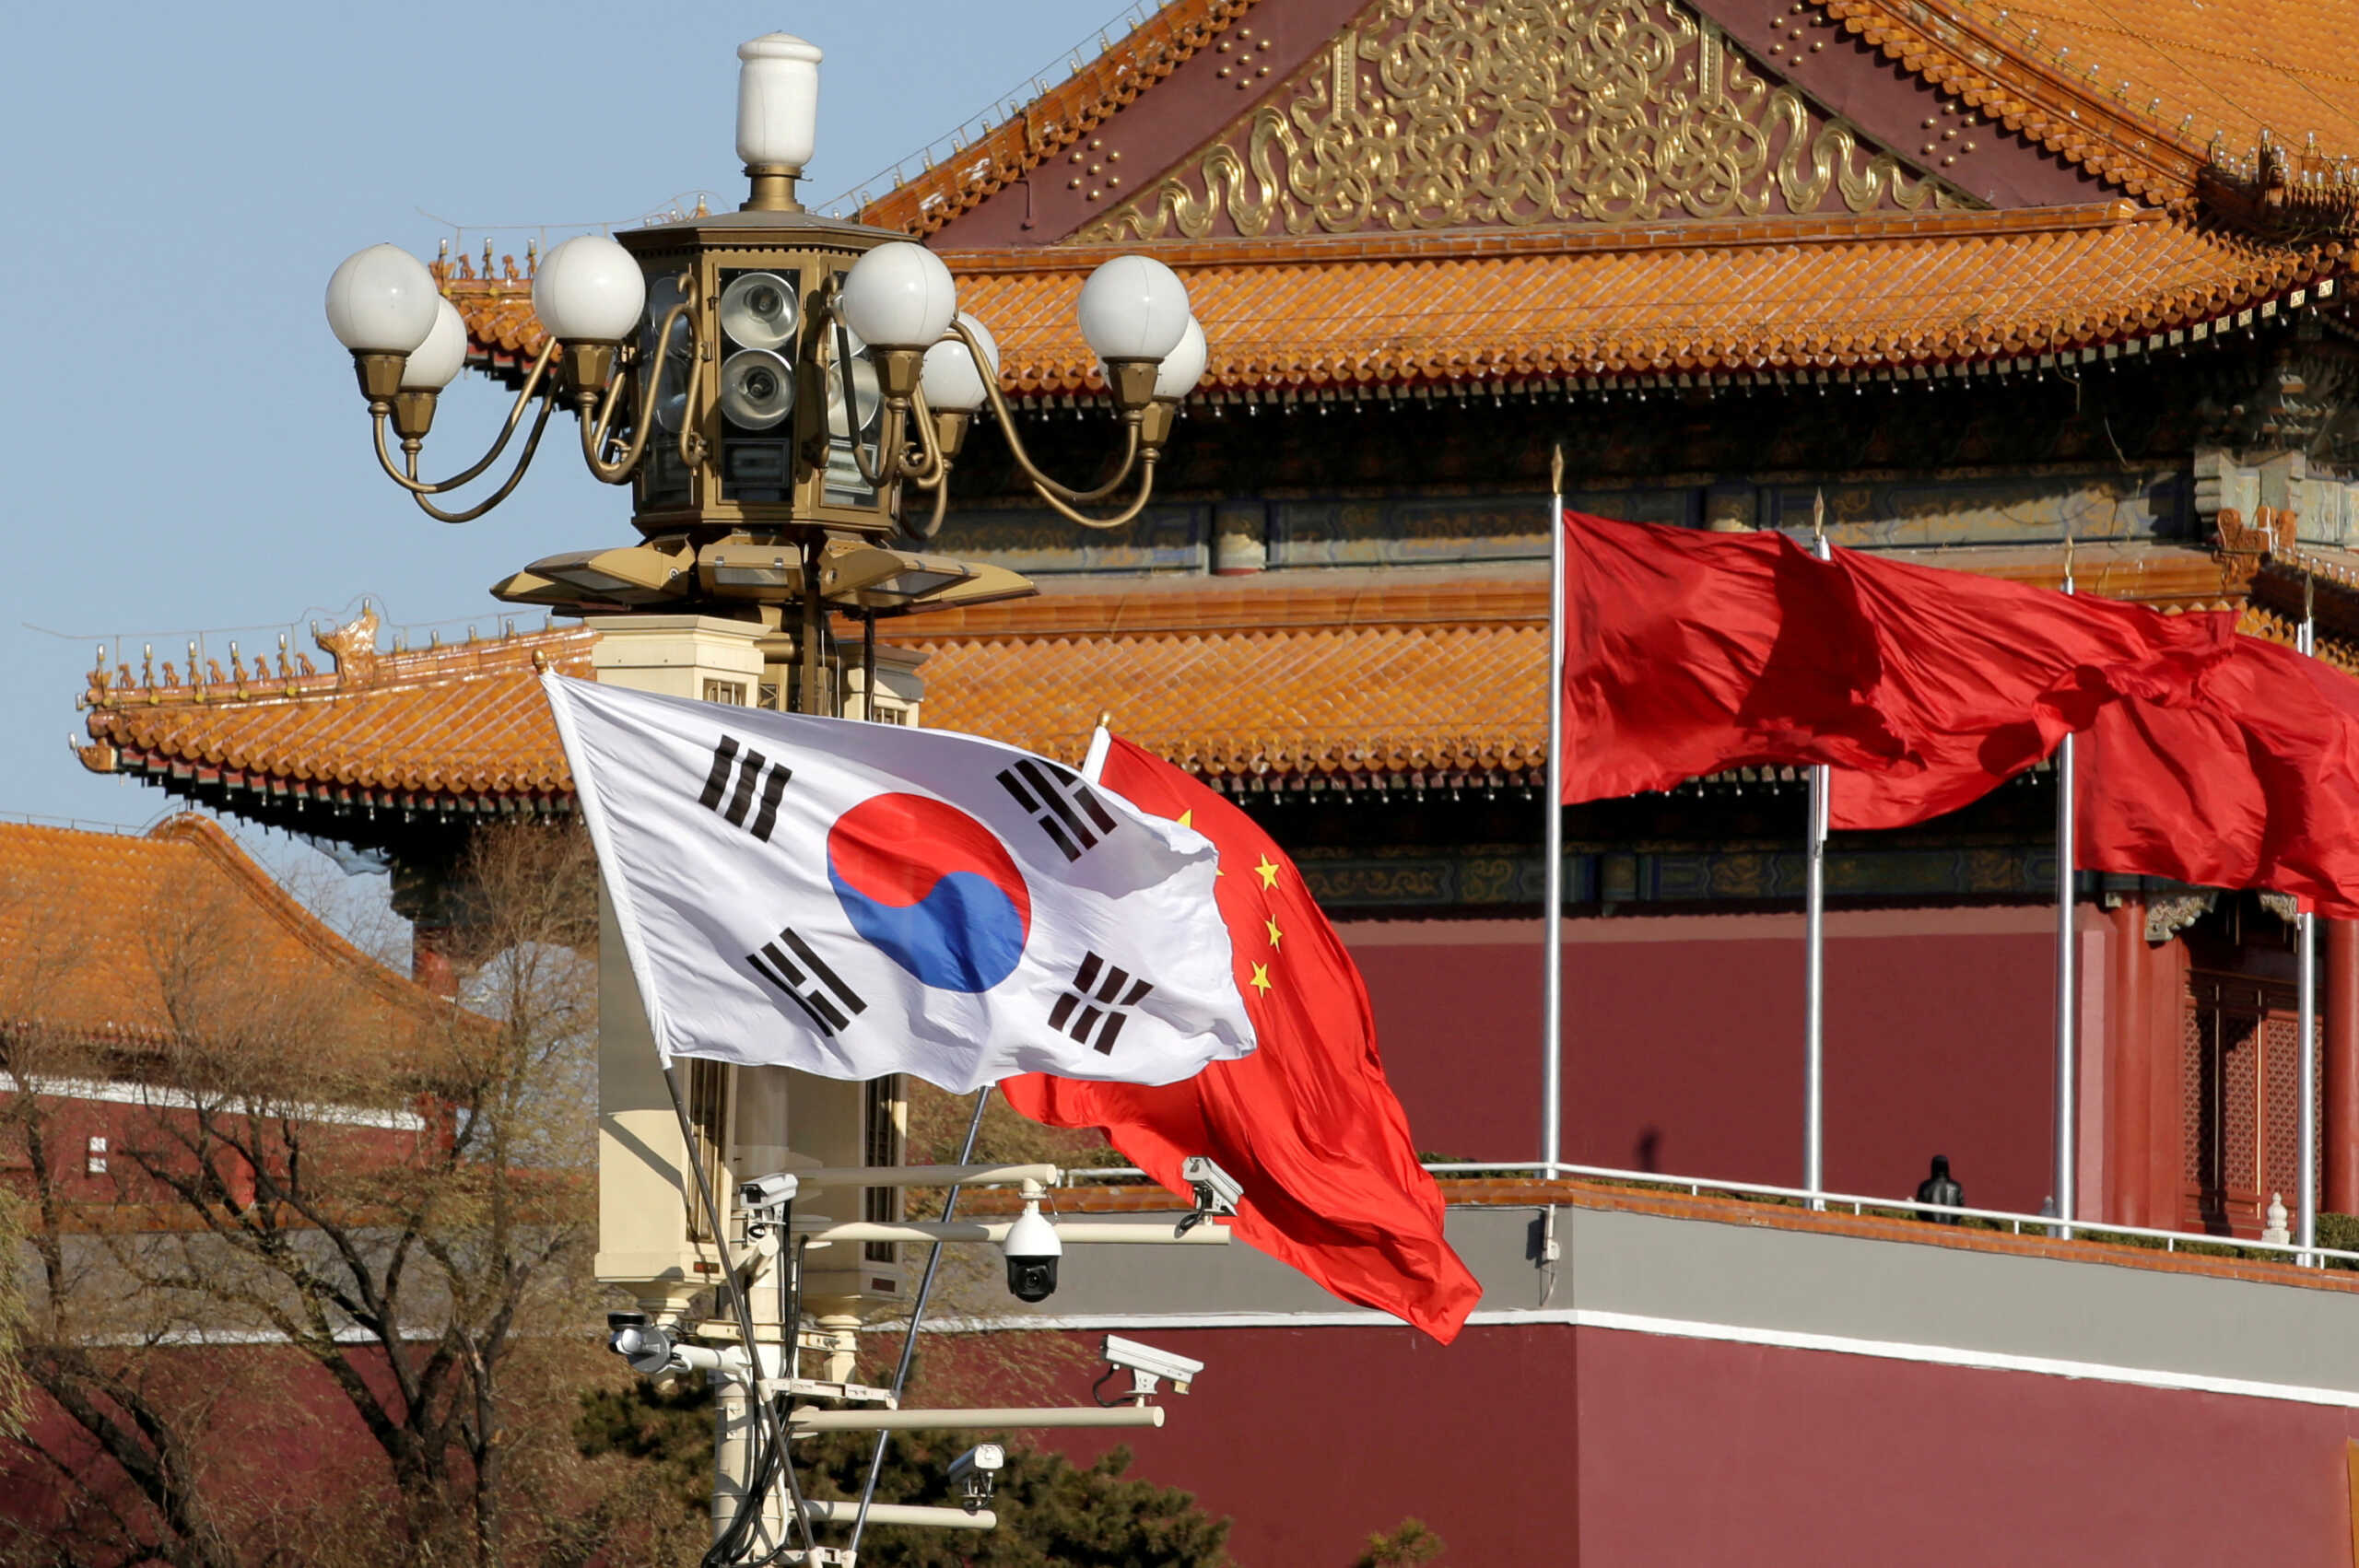 Νότια Κορέα: Δεκάδες συλλήψεις για κατασκοπεία – Κατηγορίες για διαρροή τεχνολογικών μυστικών προς την Κίνα